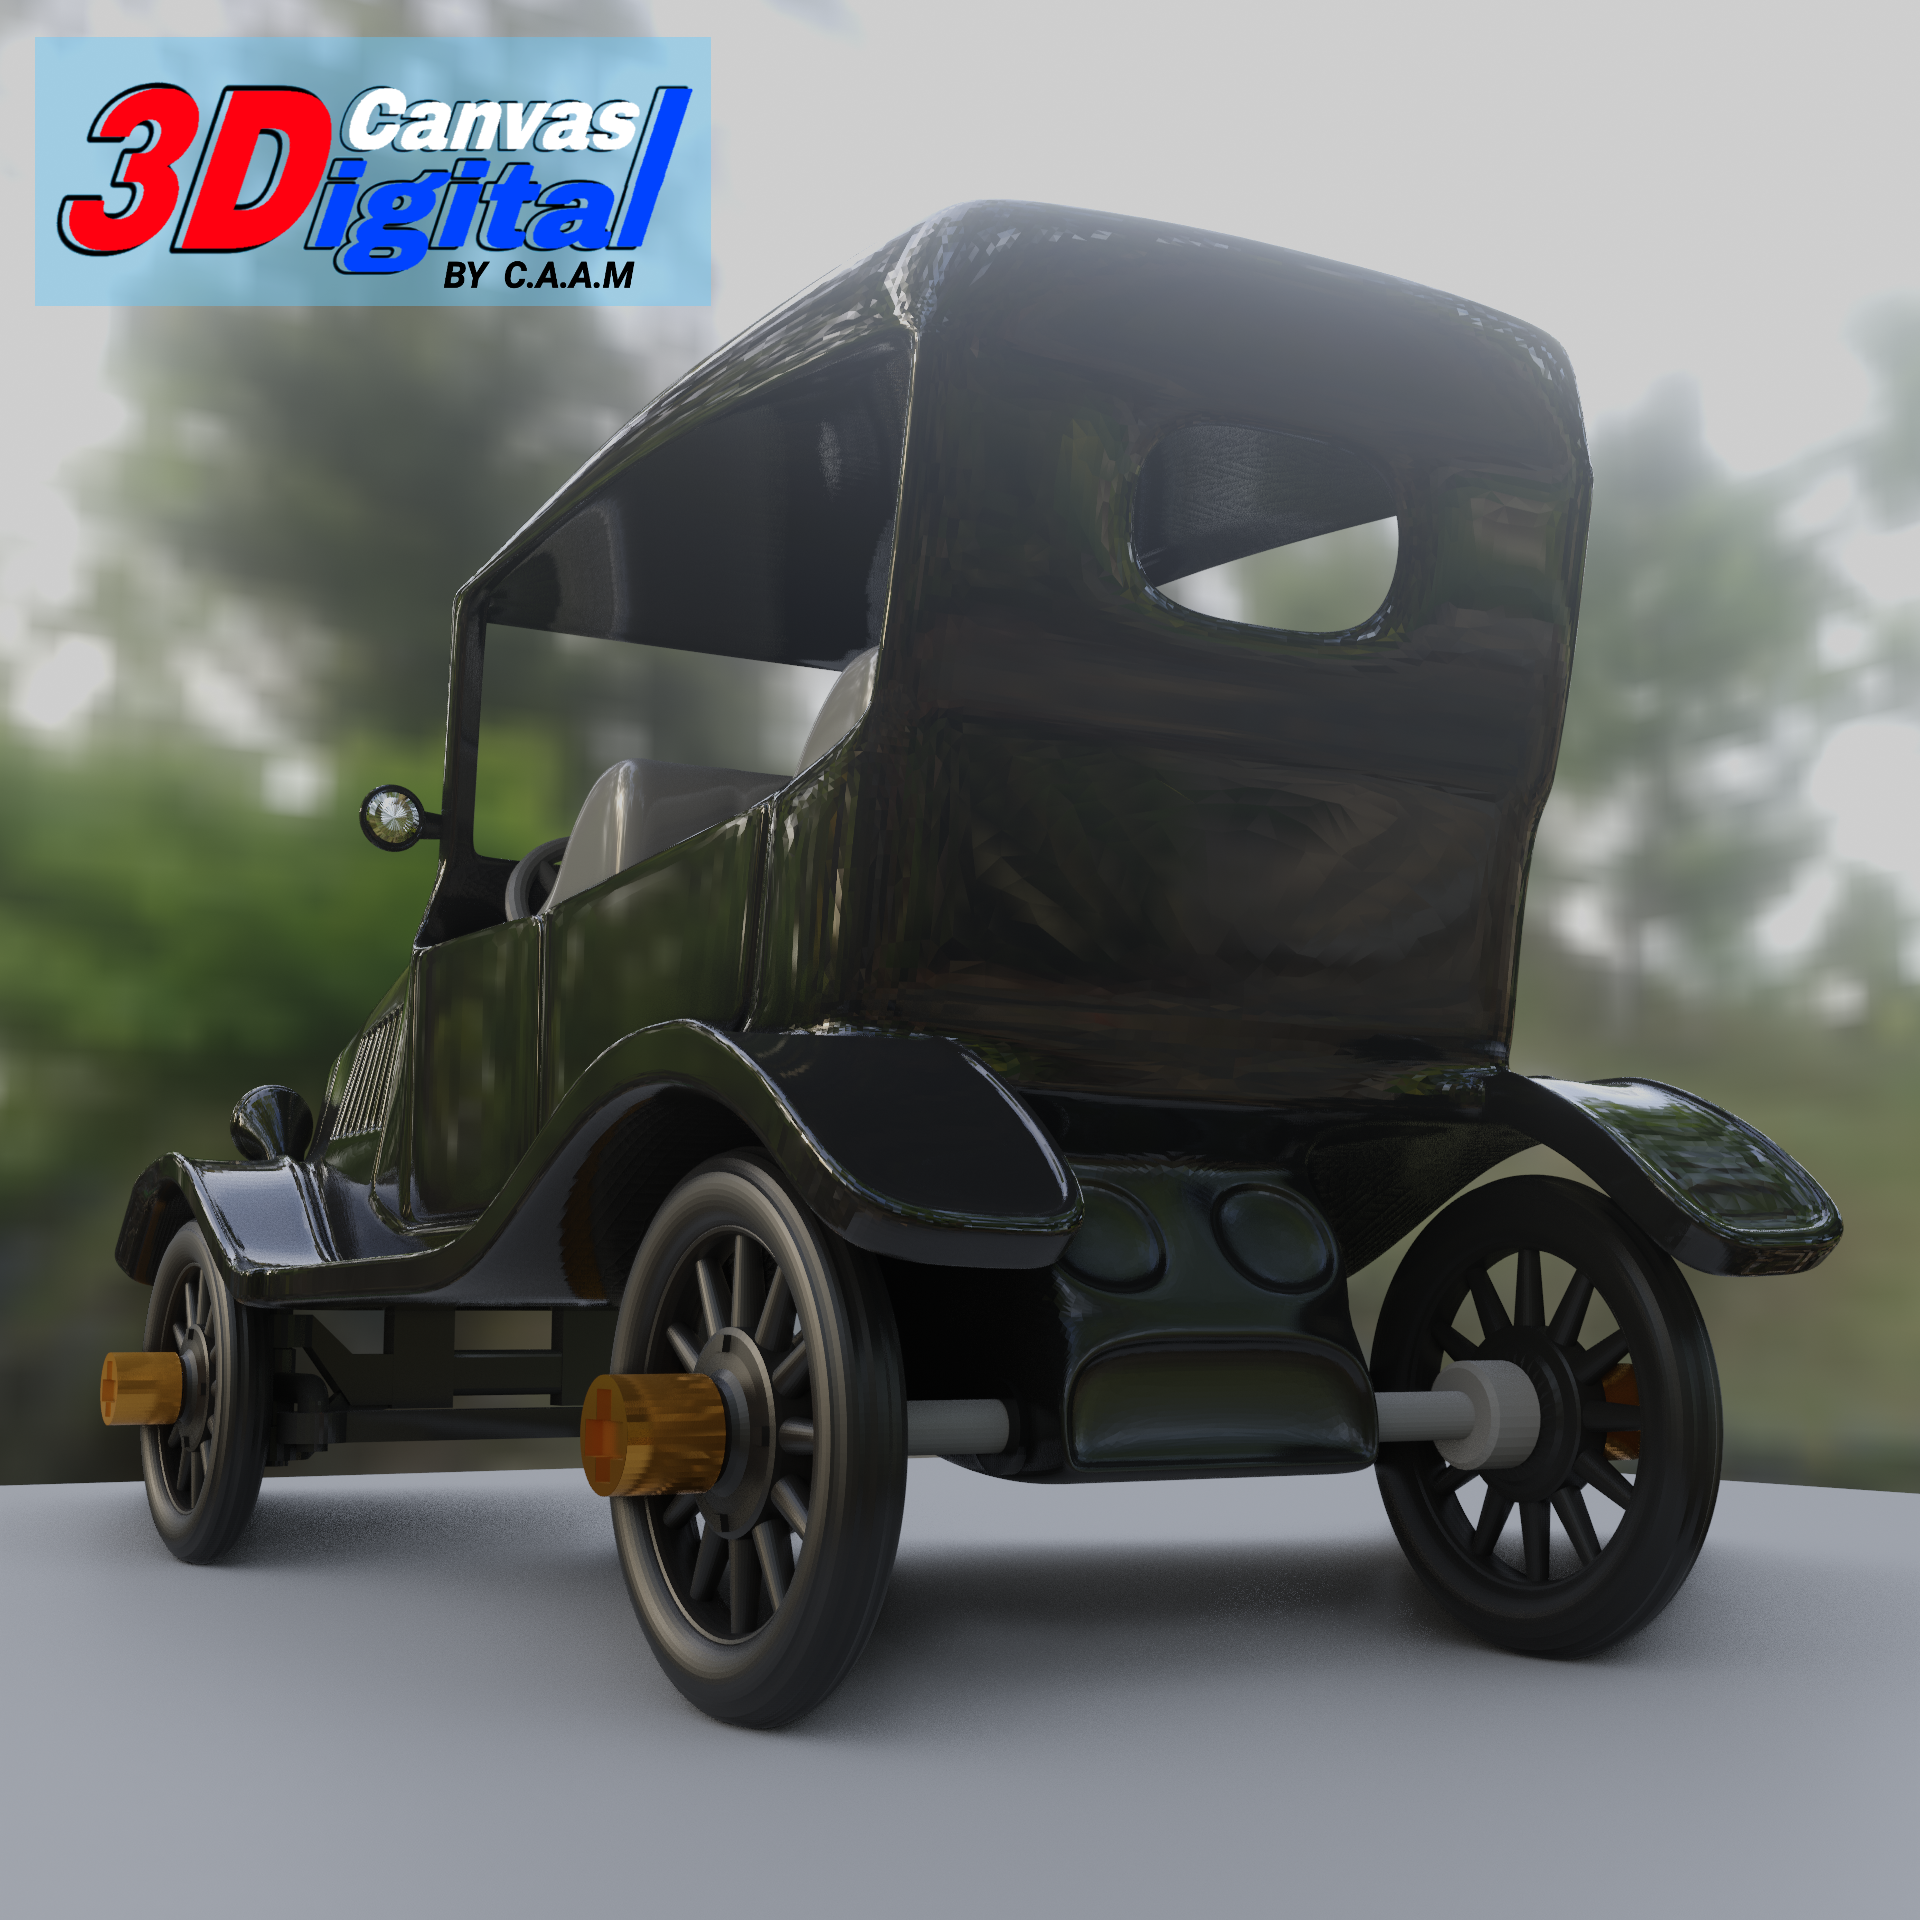 gtbgbgb.png Download file Classic car for 3D print • 3D print object, Canvas3Digital